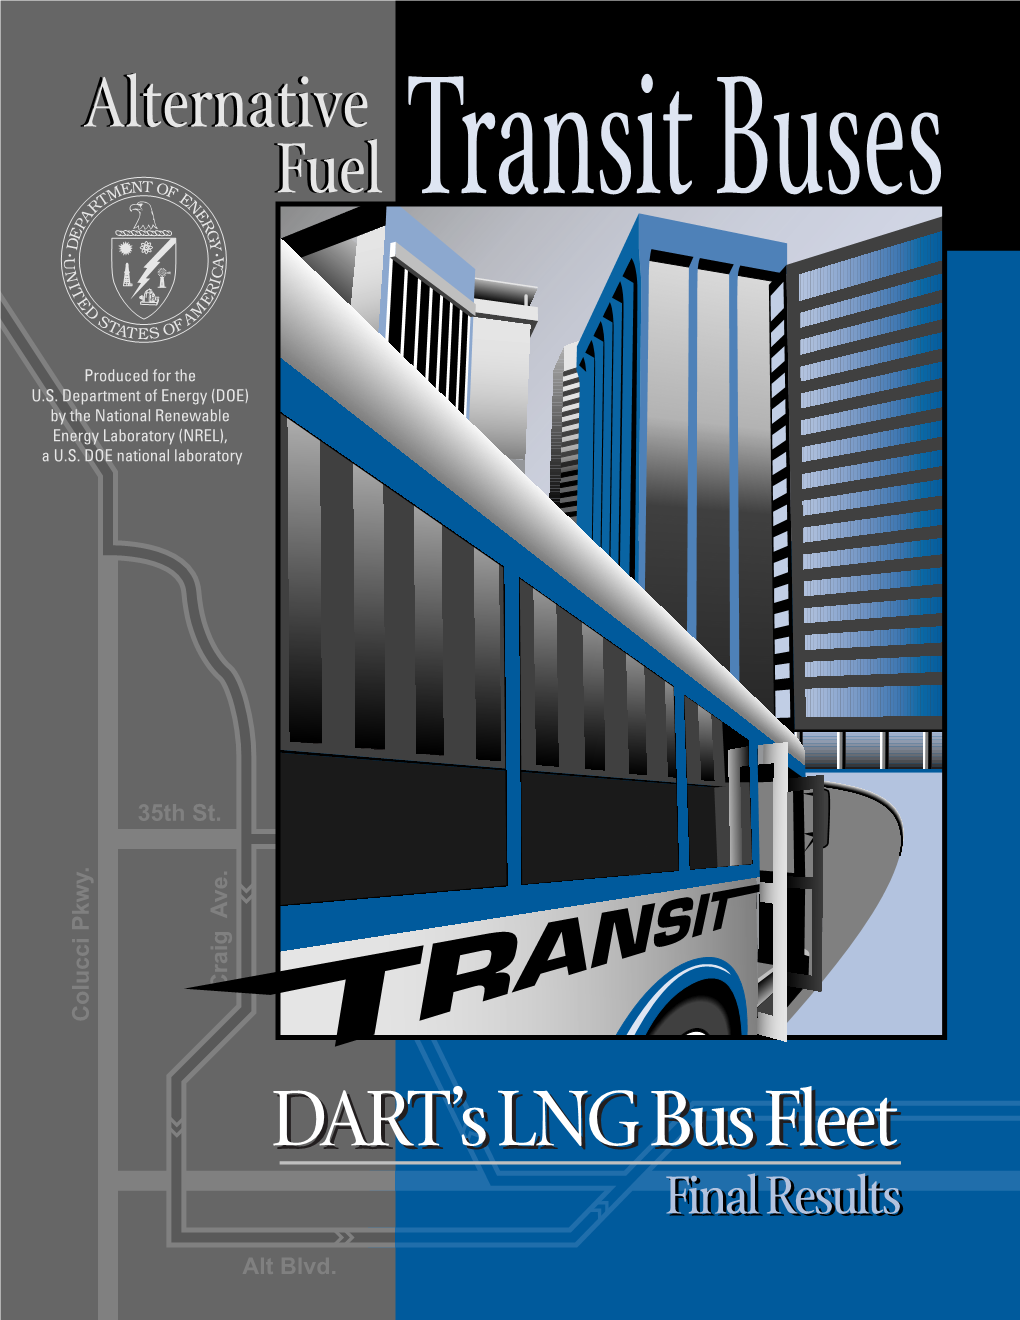 DART's LNG Bus Fleet Final Results